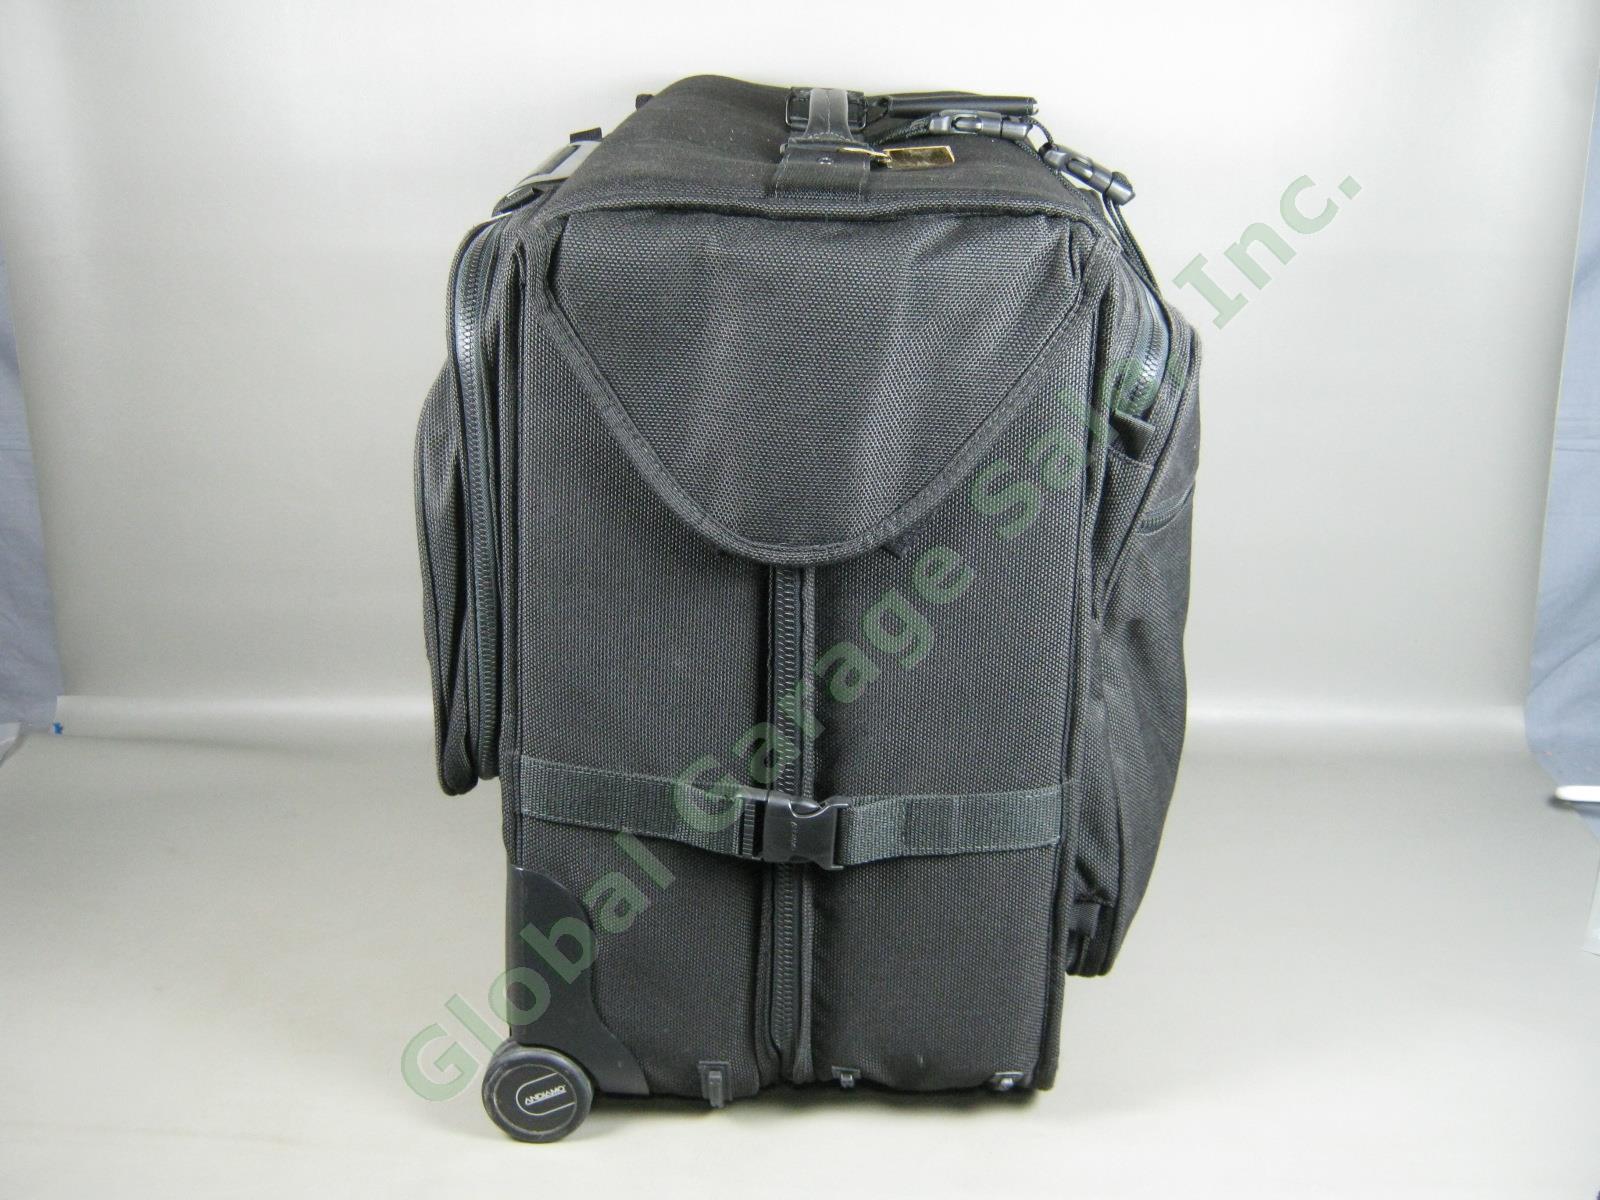 Andiamo Valoroso Wheeled Wardrobe Garment Bag Black Luggage 25x24x16 Exc Cond! 3